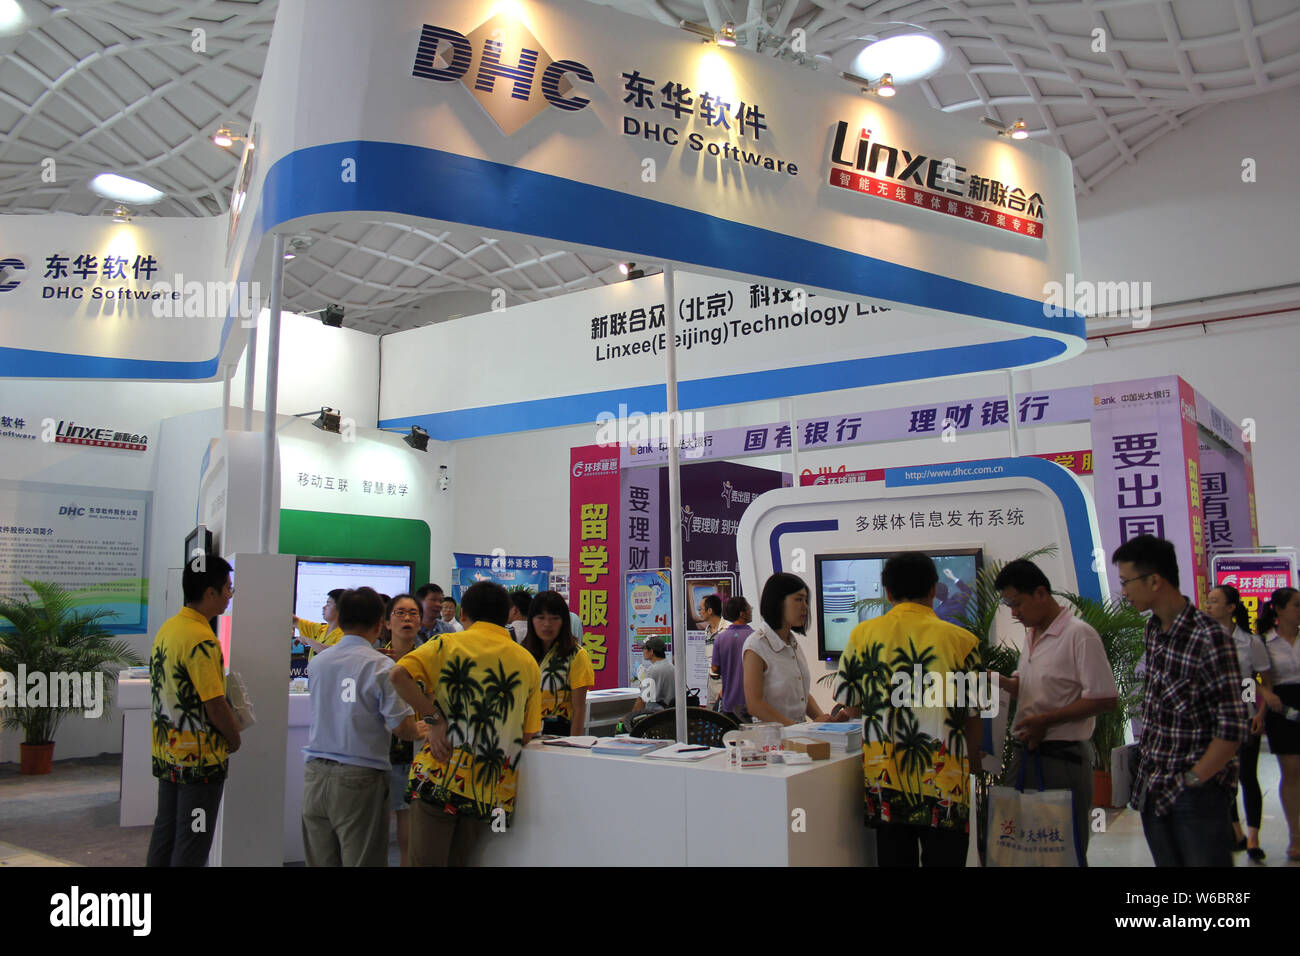 ---- Menschen besuchen den Stand der Software Anbieter DHC Software in Stadt Haikou, South China Hainan Provinz, 28. Juni 2014. Eine Einheit von Tencent Fei Stockfoto